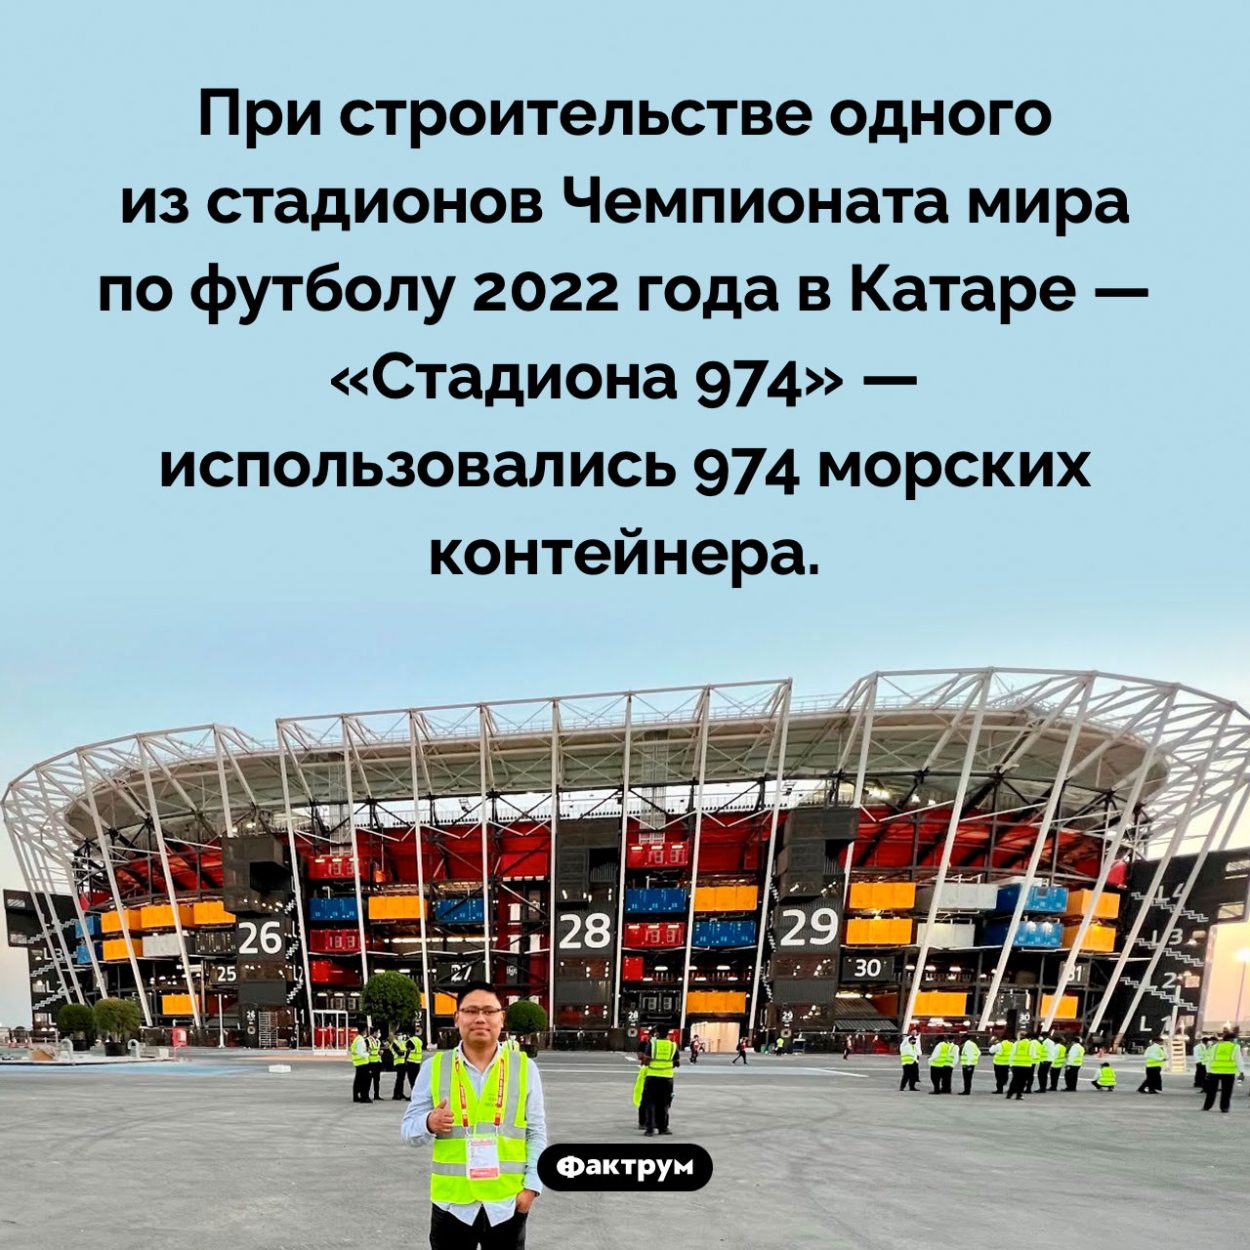 Стадион из контейнеров. При строительстве одного из стадионов Чемпионата мира по футболу 2022 года в Катаре — «Стадиона 974» — использовались 974 морских контейнера.